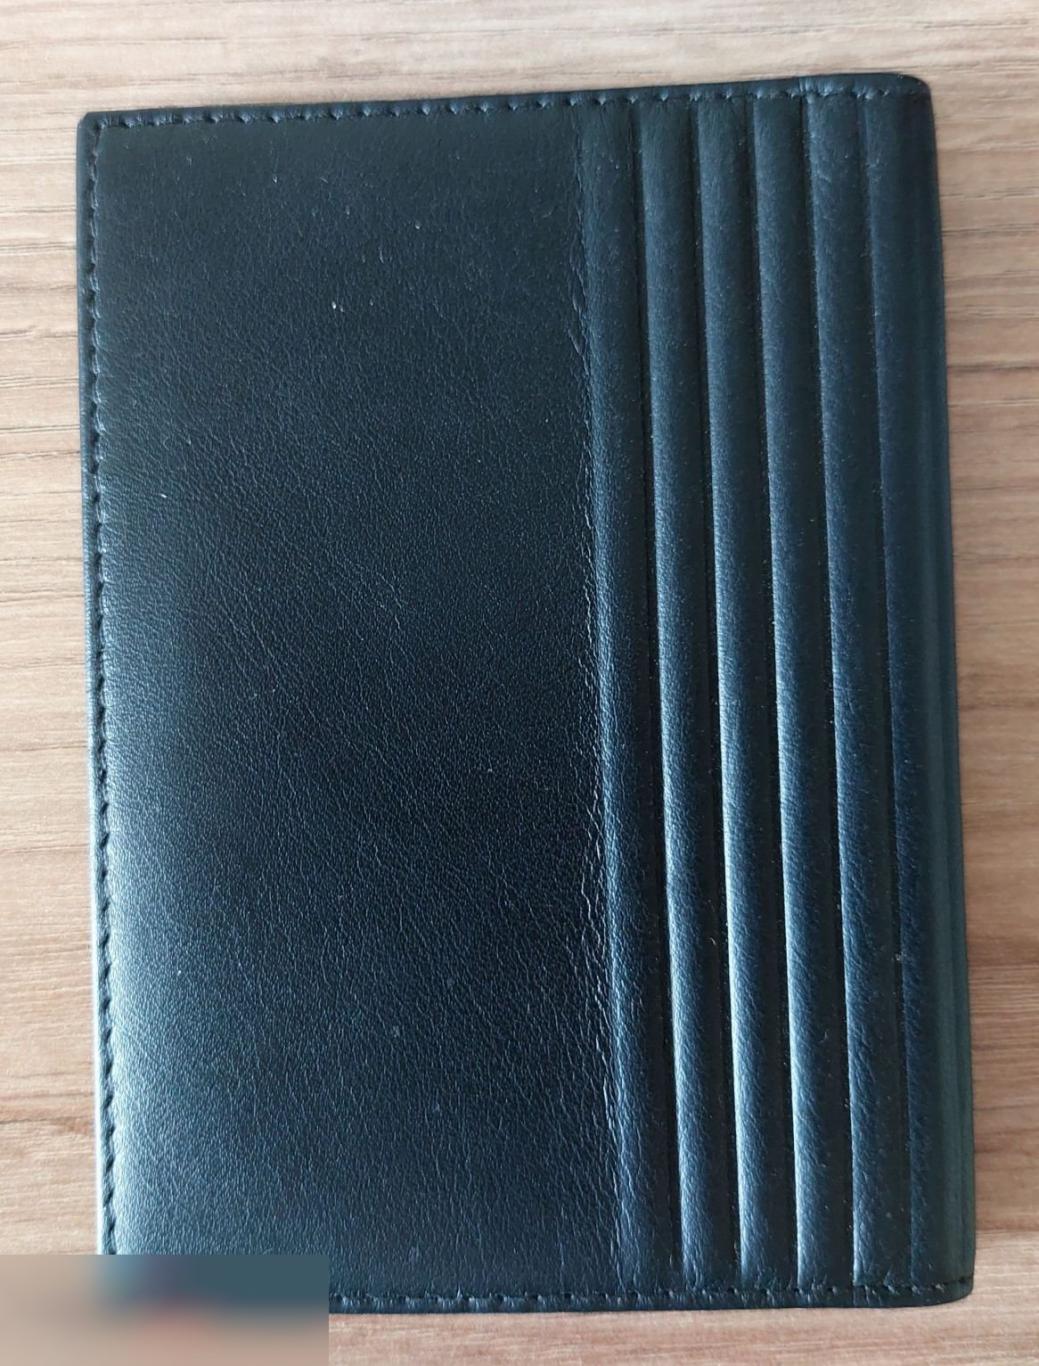 Бумажник, Портмоне, Для Документов, Натуральная Кожа Авто Документы БЛБ BLB Best Leather For Bisunes 3